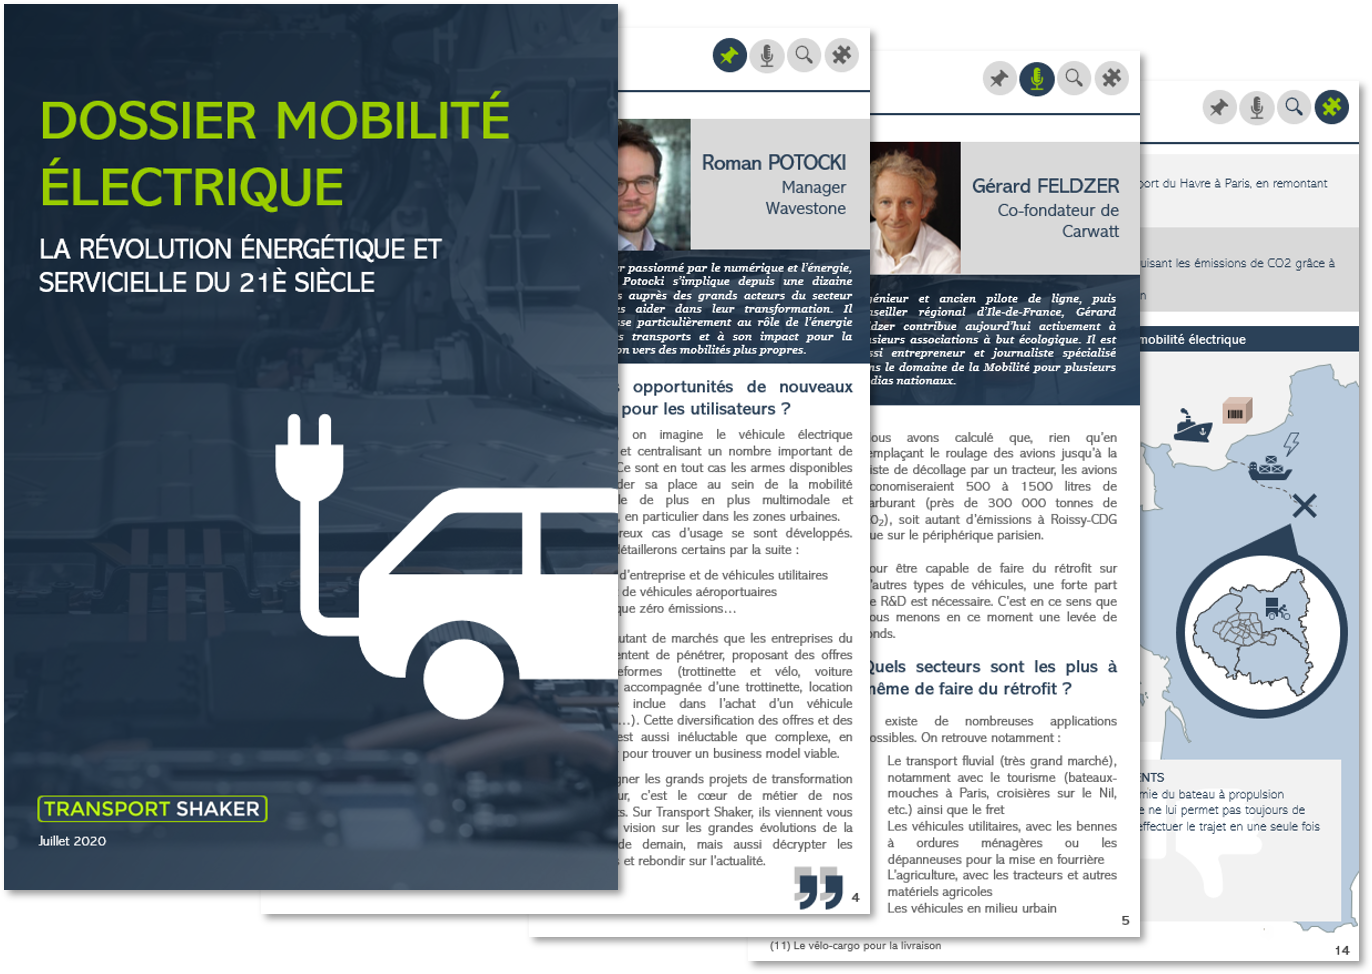 Dossier TransportShaker : mobilité electrique